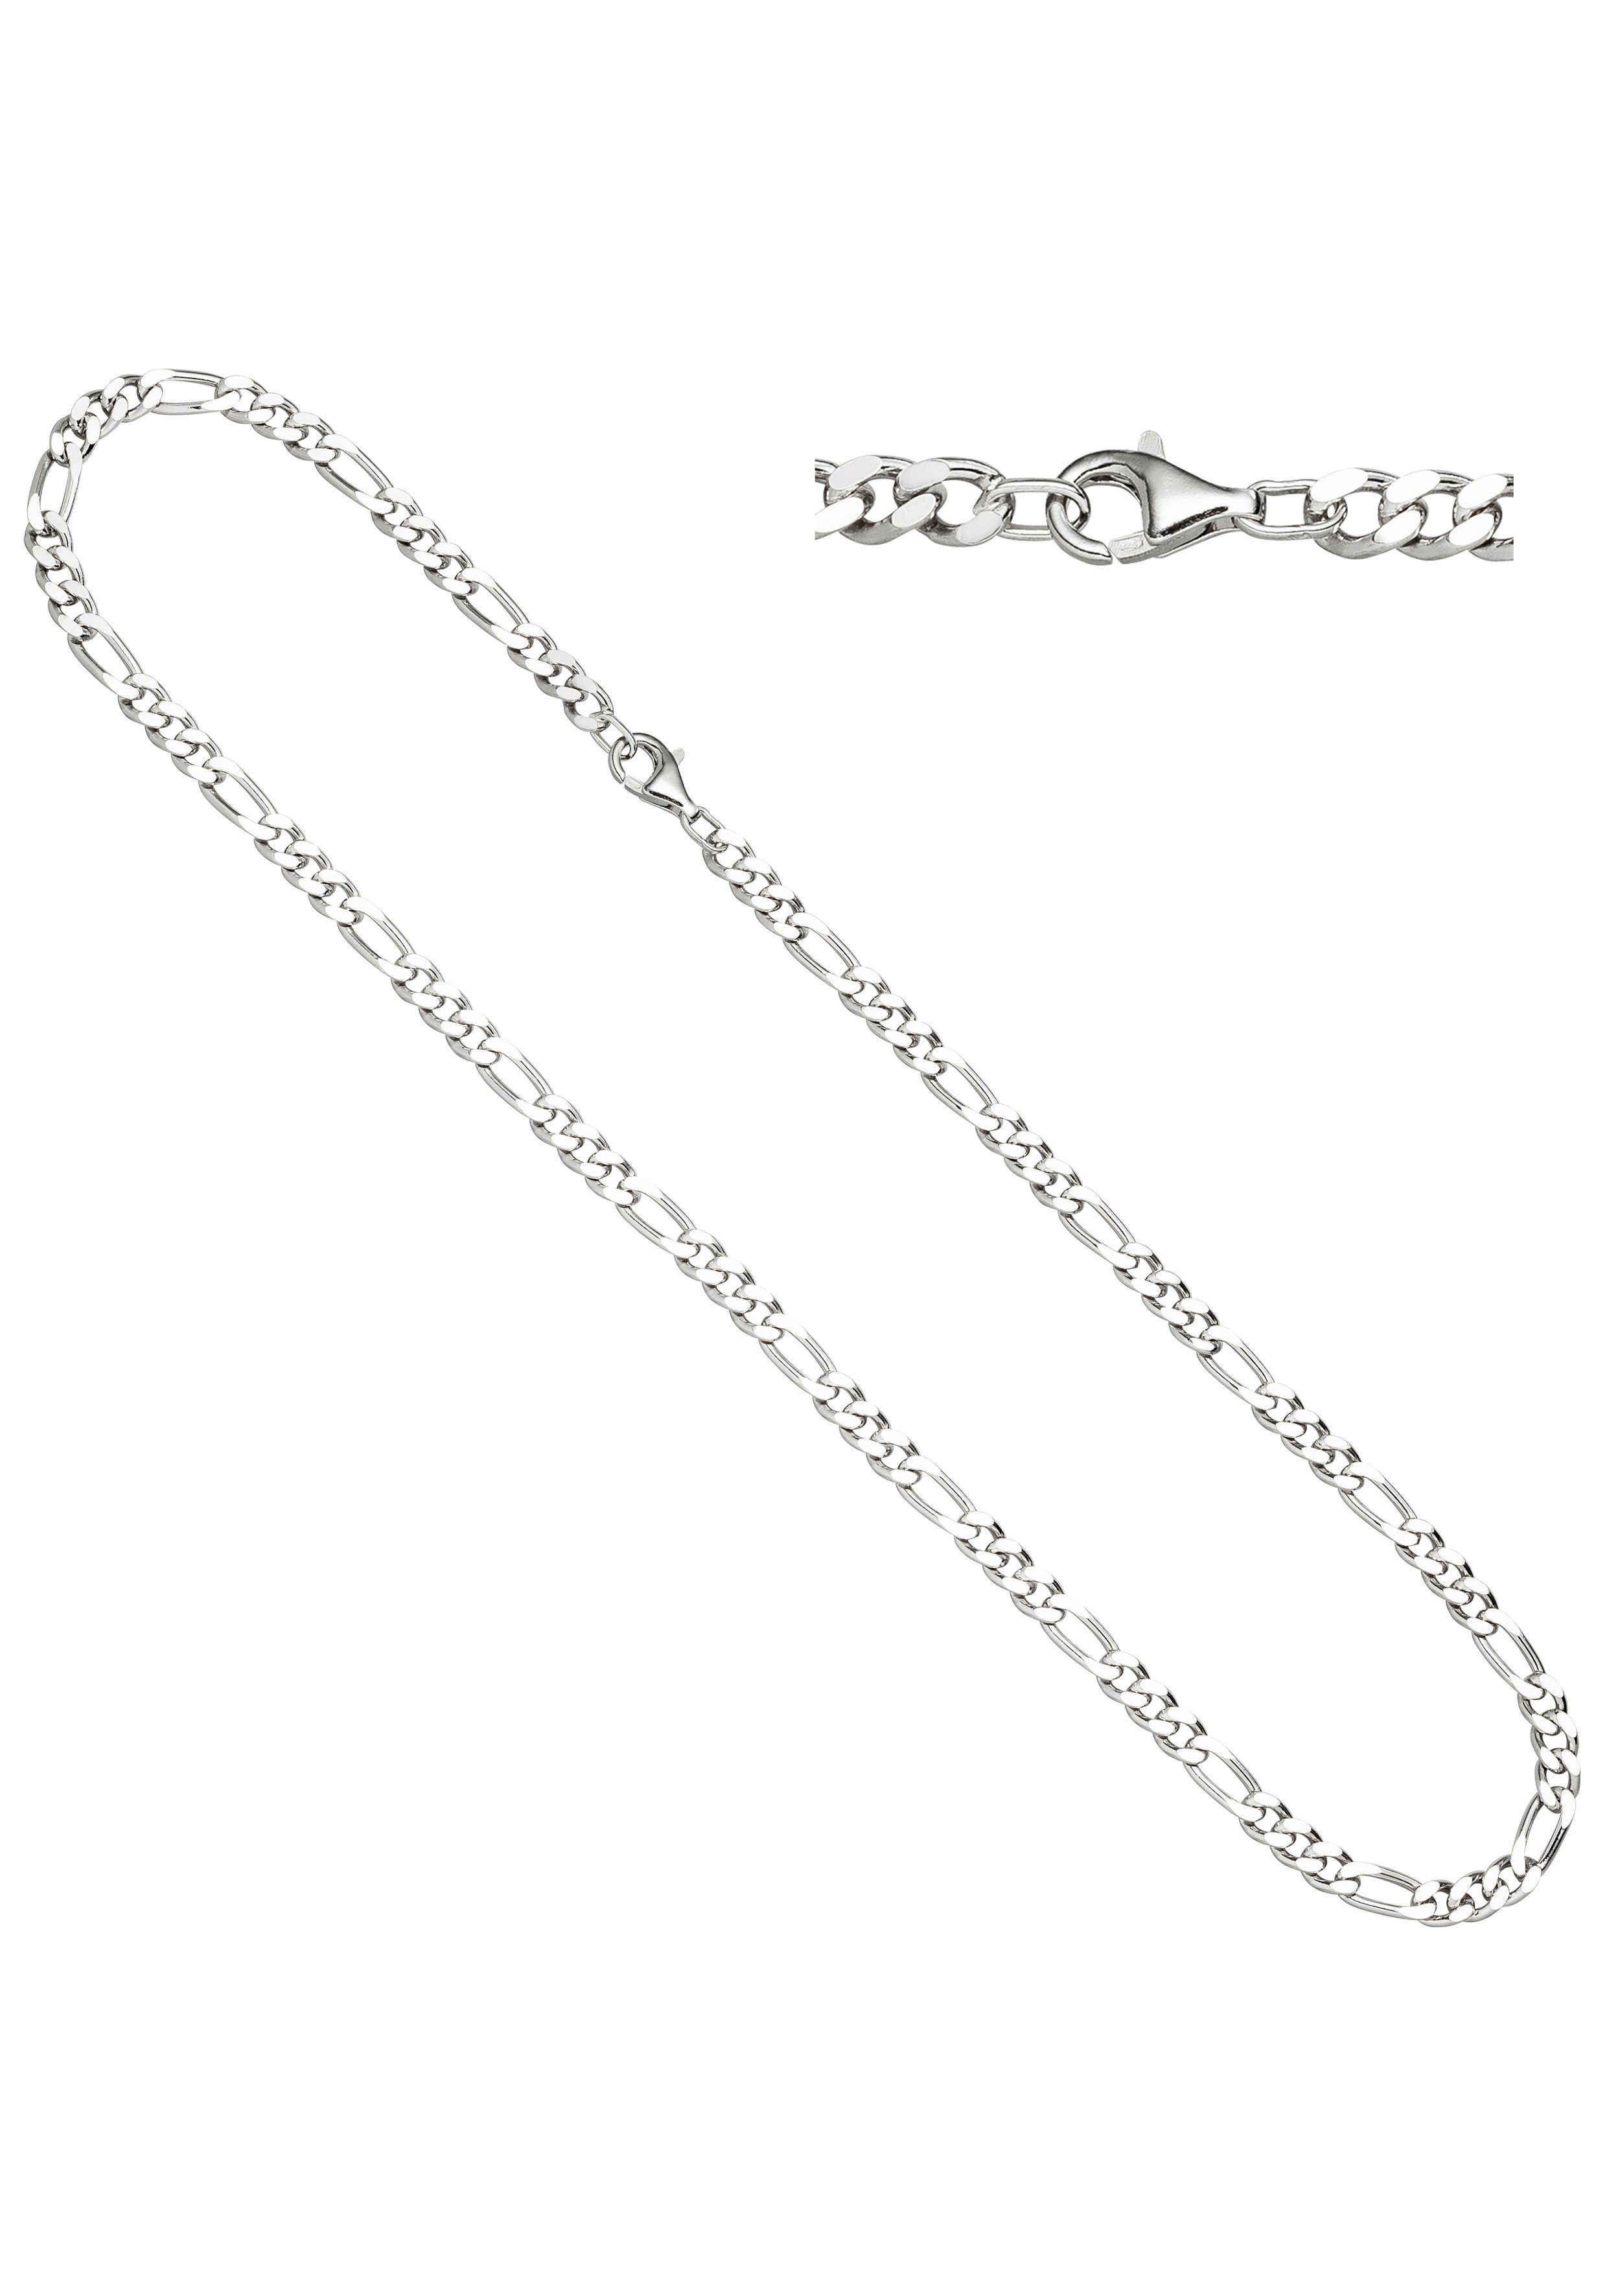 JOBO Silberkette, Figarokette 925 Silber diamantiert 60 cm